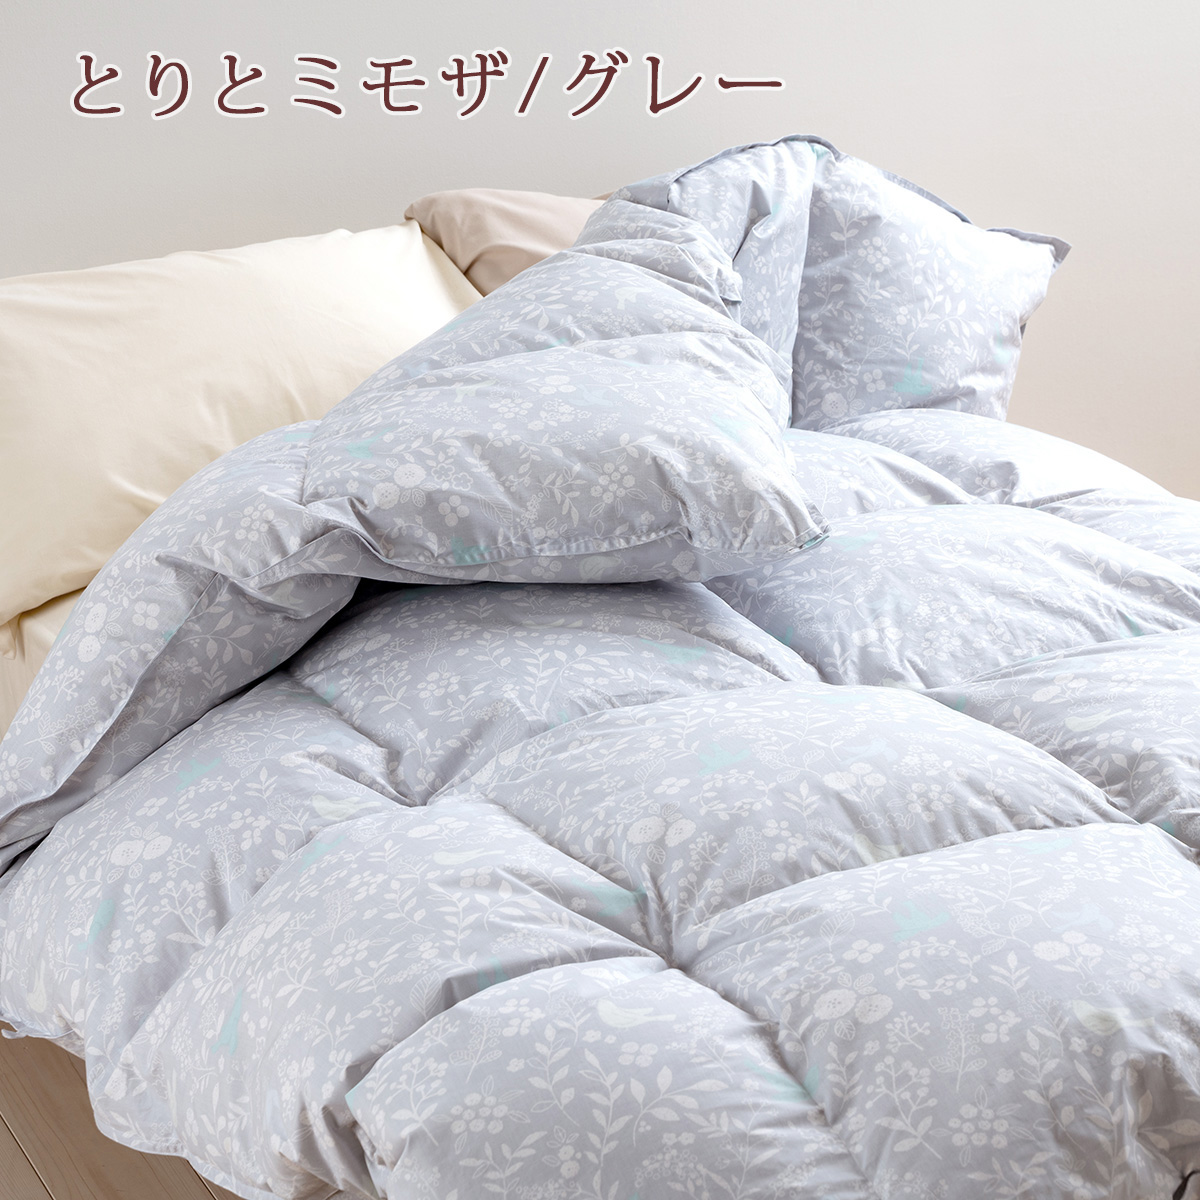 最安値に挑戦】 西川 羽毛布団 シングル 暖か中央増量 1.3kg ホワイト